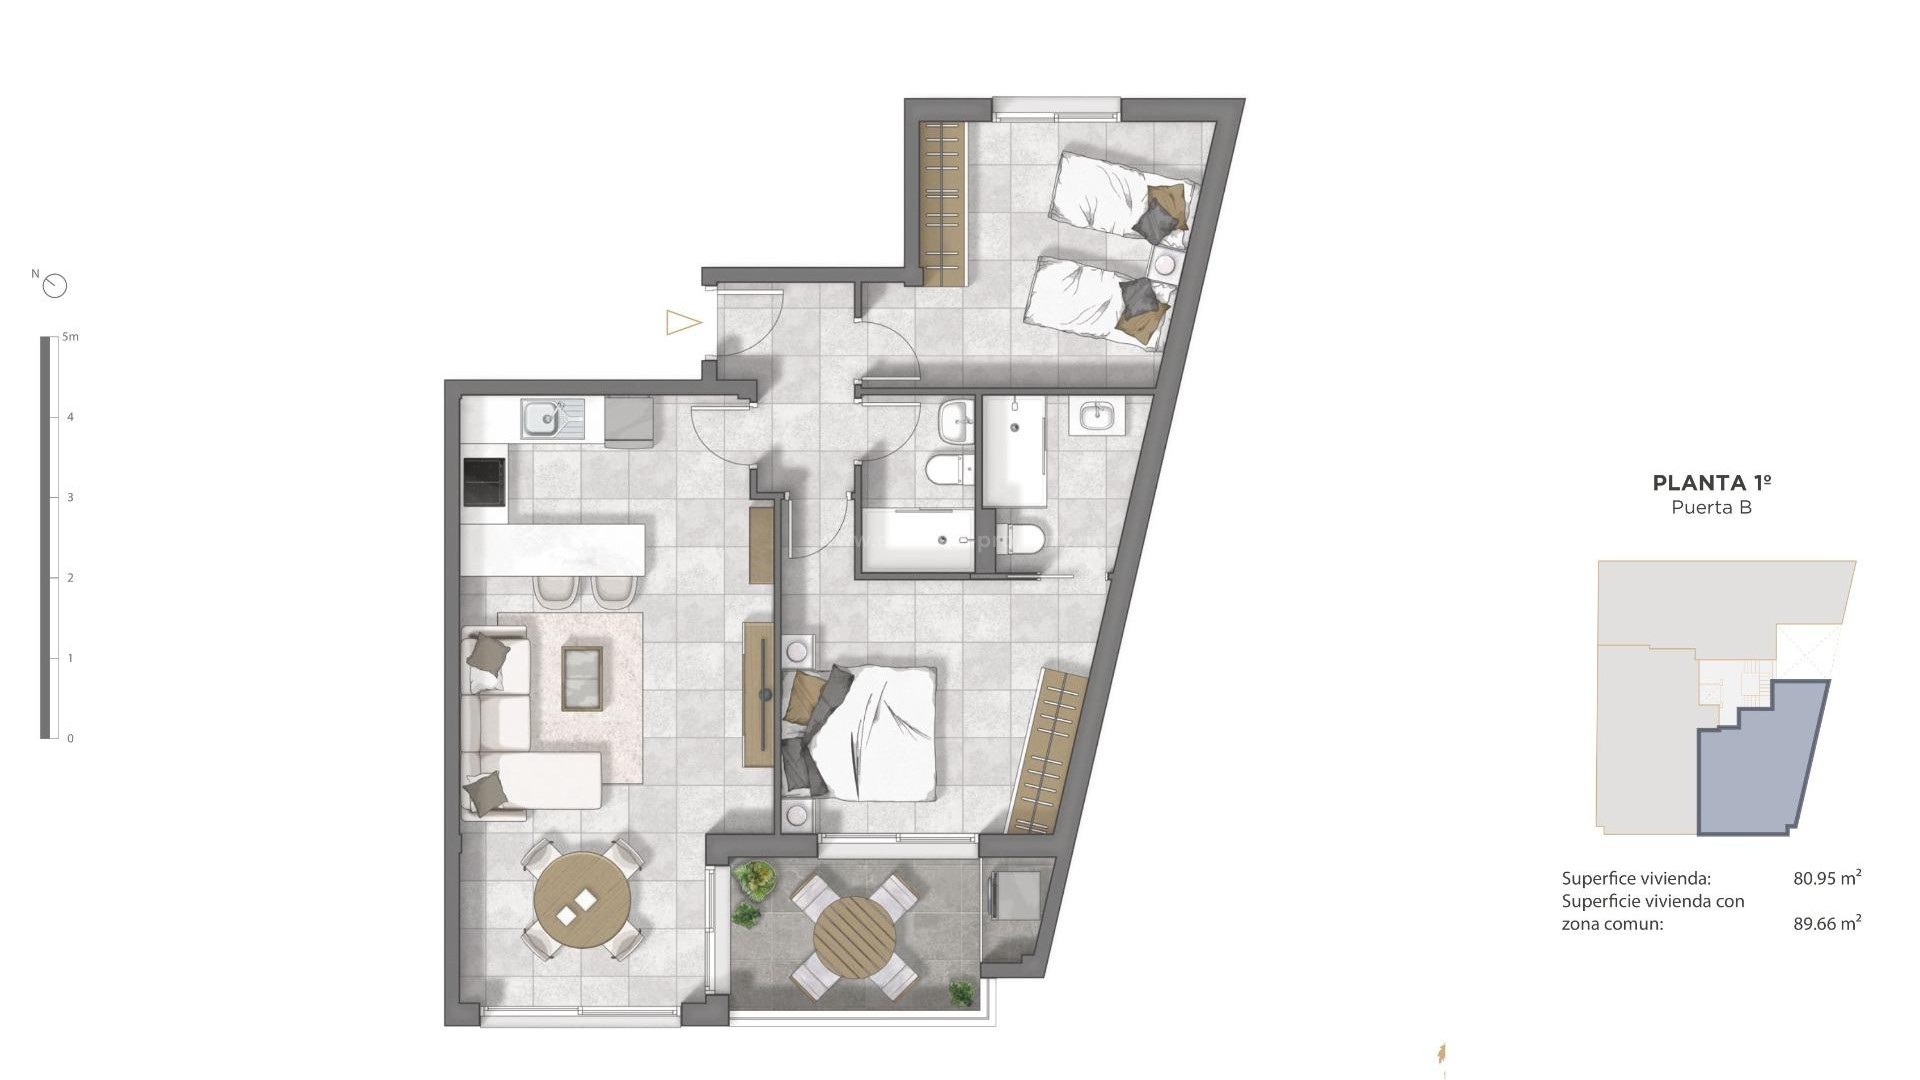 Boligkompleks med leiligheter/toppleilligheter i Guardamar del Segura, 2/3 soverom, alle har åpen kjøkkenløsning med romslig stue, garderober, terrasse